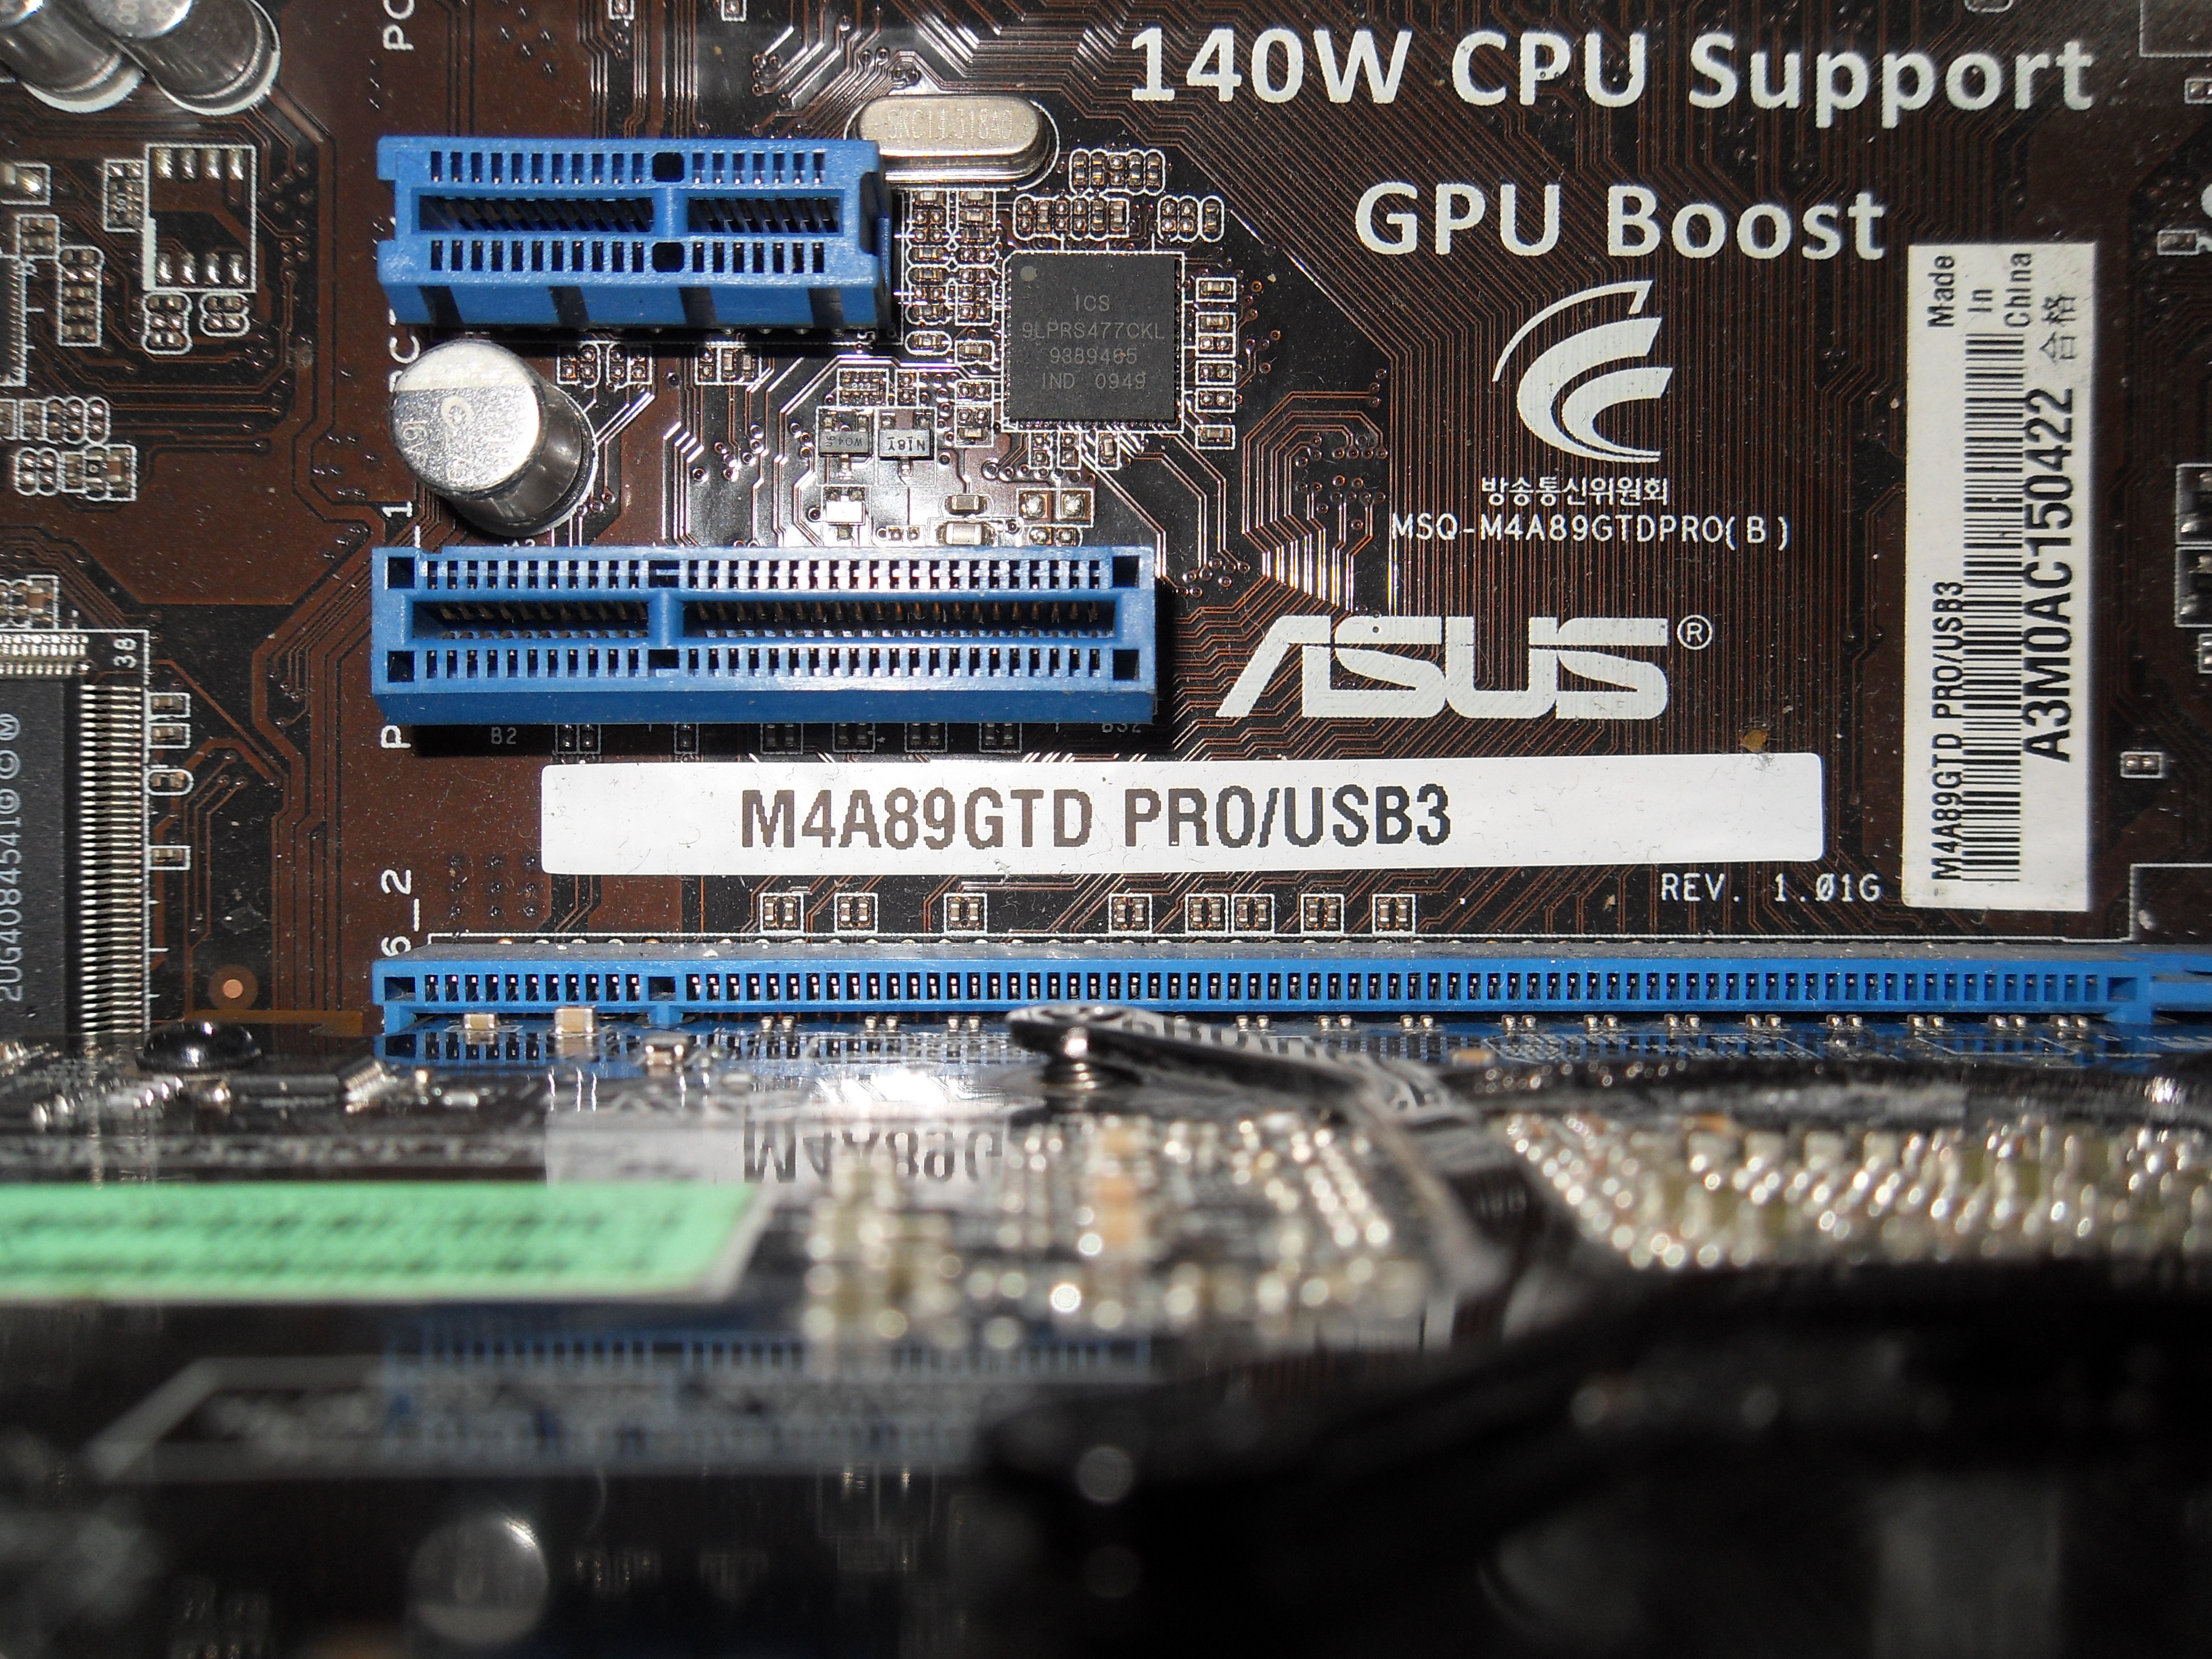  ASUS PR0 USB 3 ANAKART AMD 955 BE İŞLEMCİ XİGMATEK SOGUTUCU